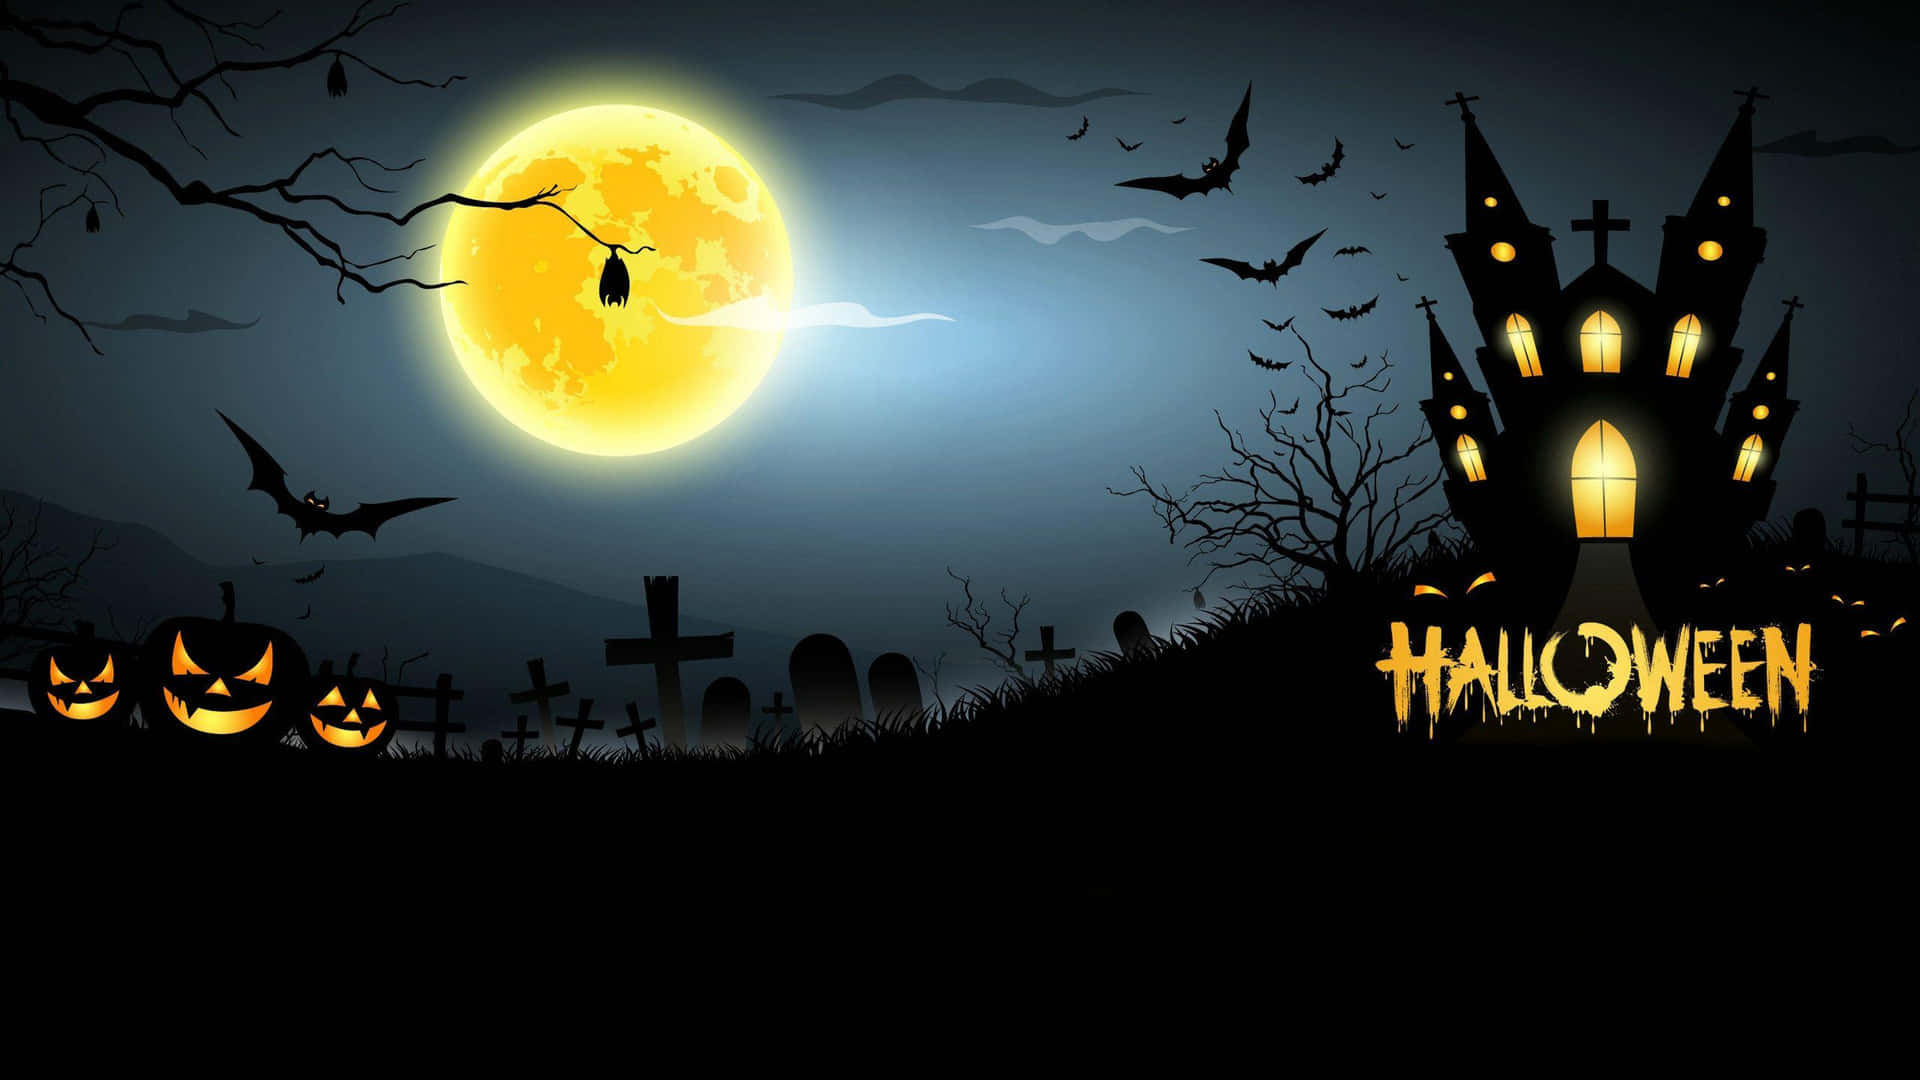 Halloweencomic: Leuchtendes Spukhaus Und Mondbild